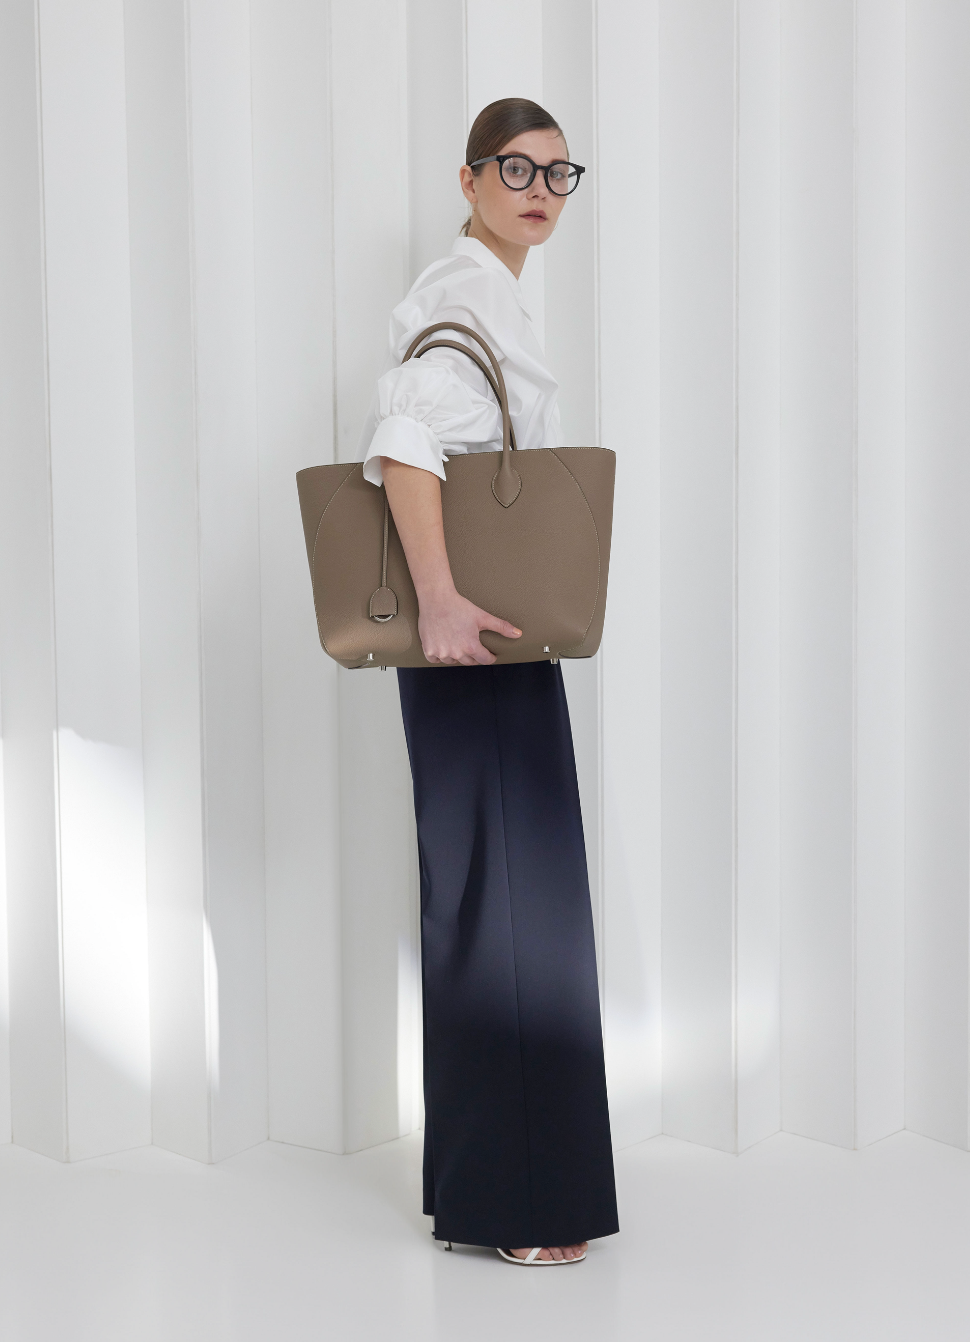 Una donna d'affari porta con sé la borsa in pelle perfetta per la vita quotidiana in ufficio